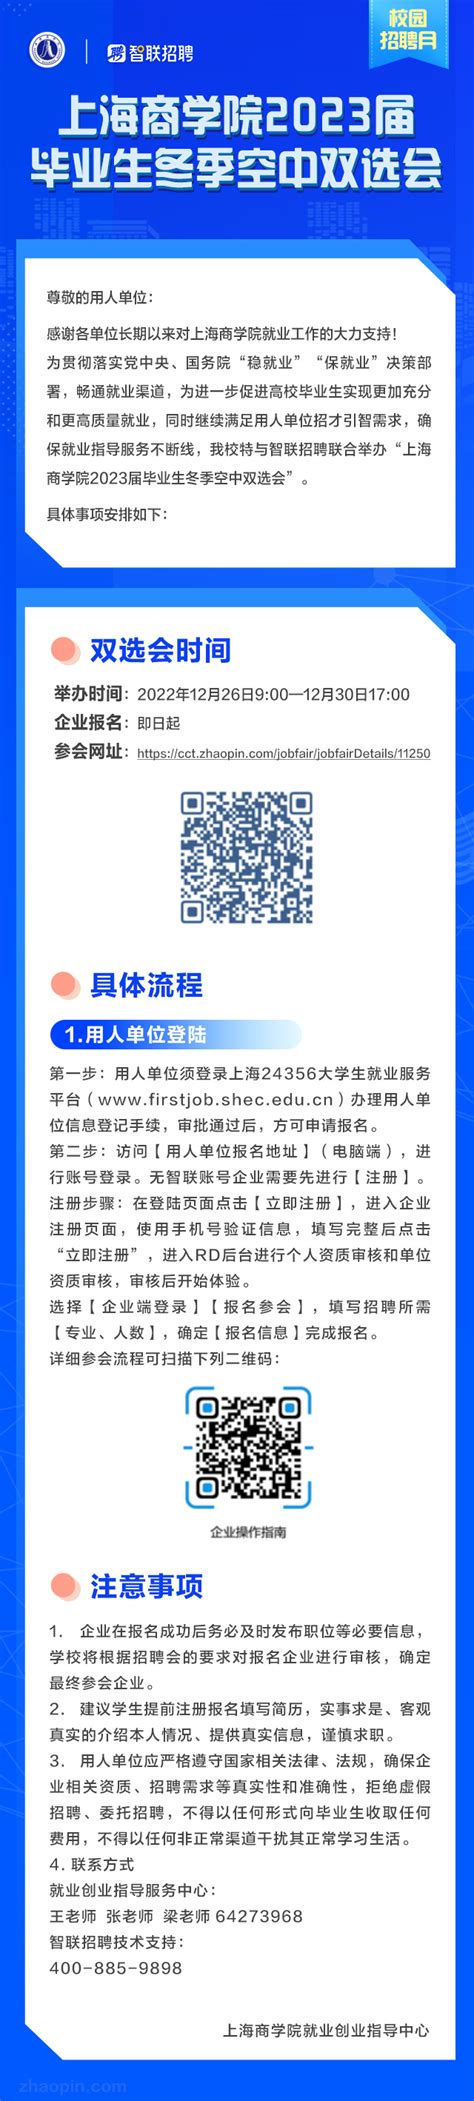 上海商学院2024年公开招聘公告-上海商学院新闻网